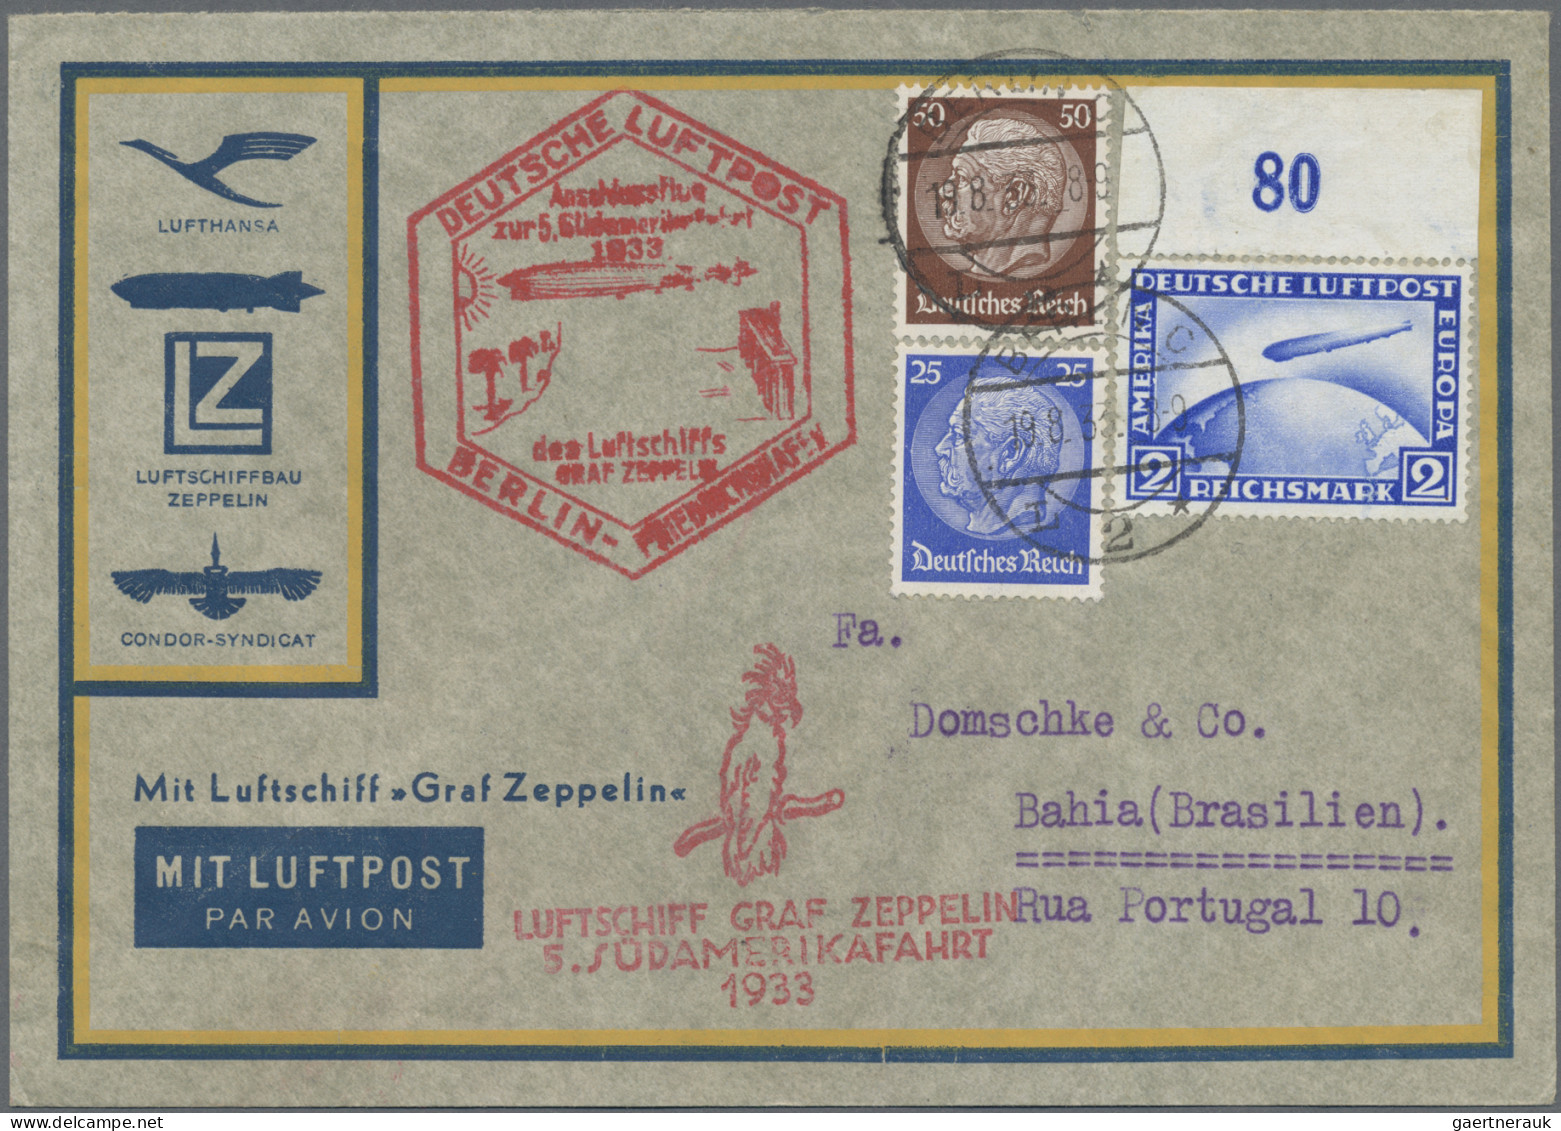 Zeppelin Mail - Germany: 1933 (19.8.), Luftpostumschlag Mit 2 RM Zeppelin Und Zu - Posta Aerea & Zeppelin